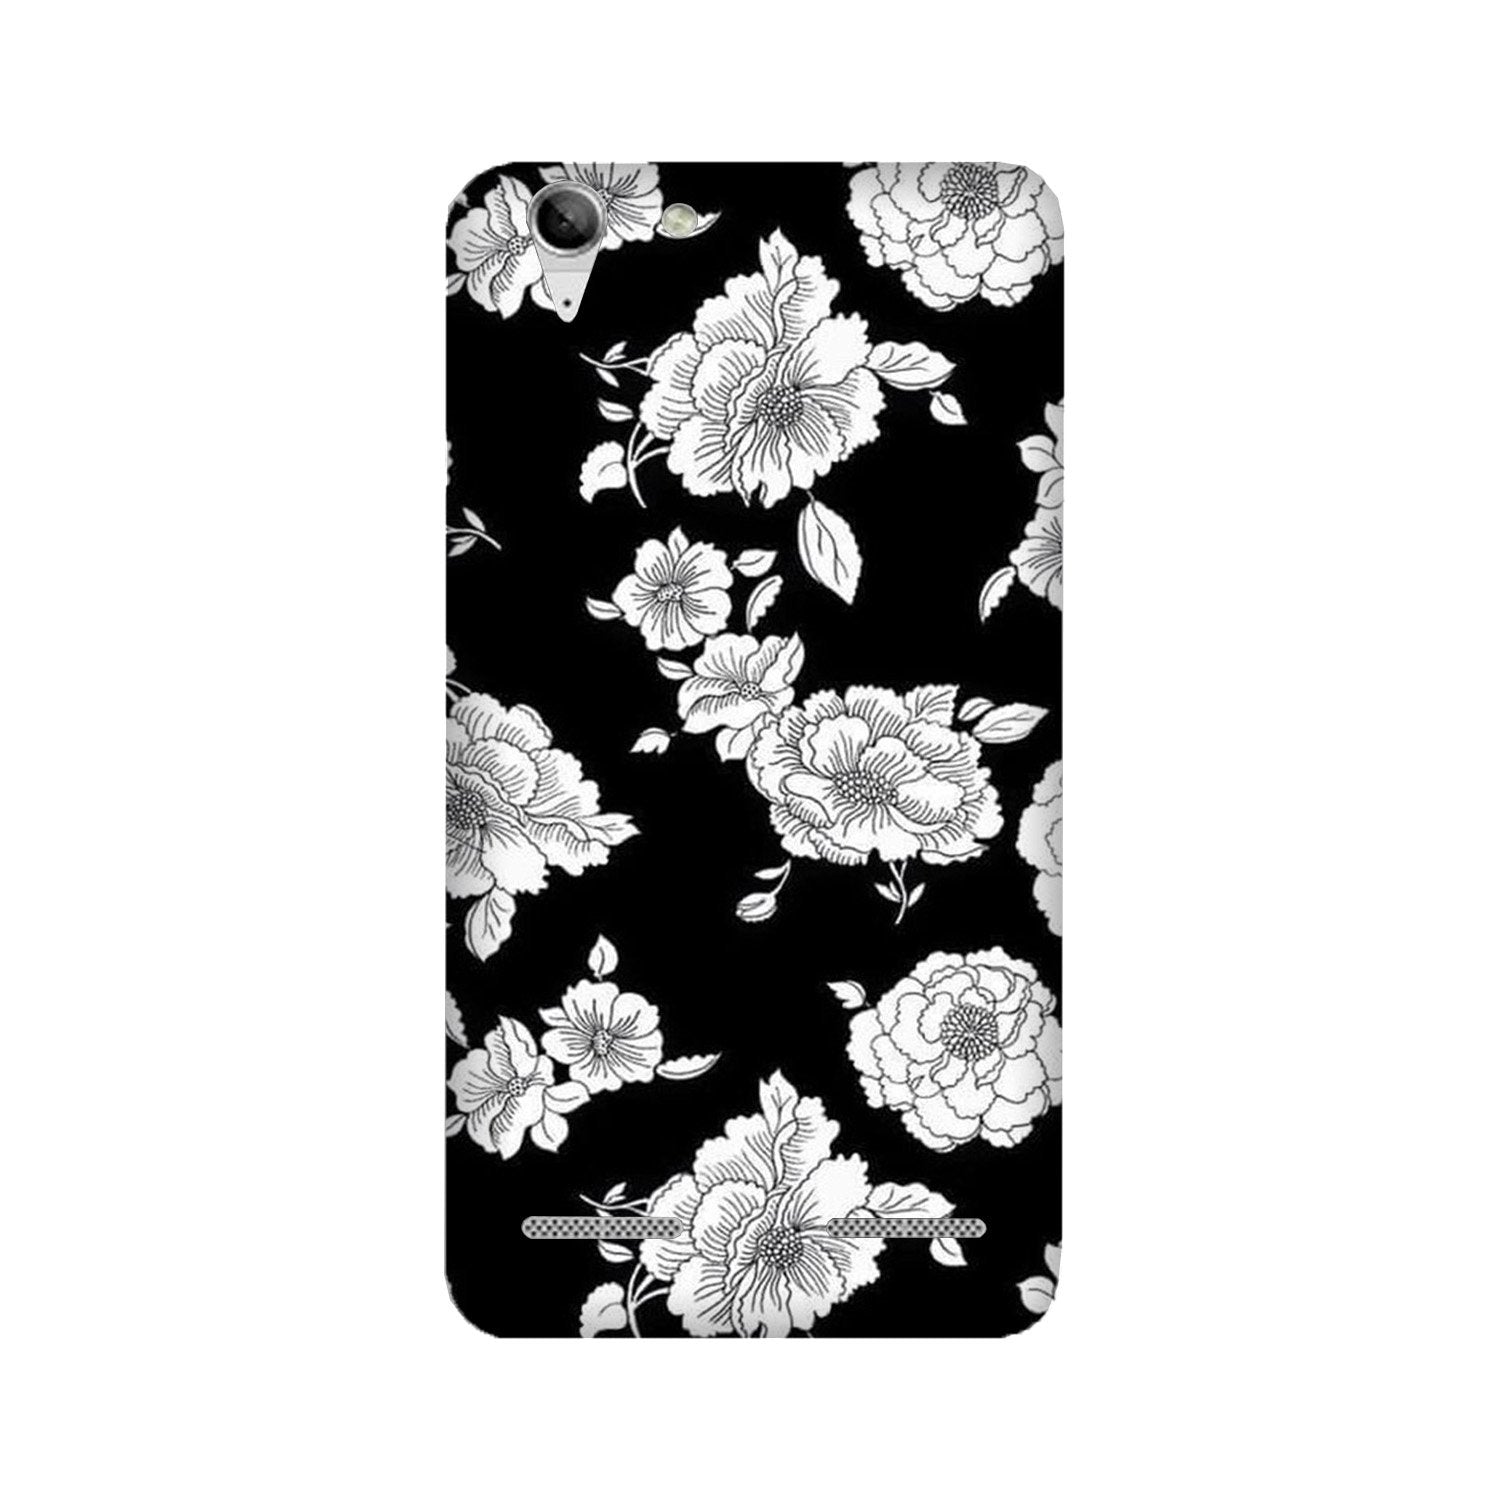 White flowers Black Background Case for Lenovo K5 / K5 Plus